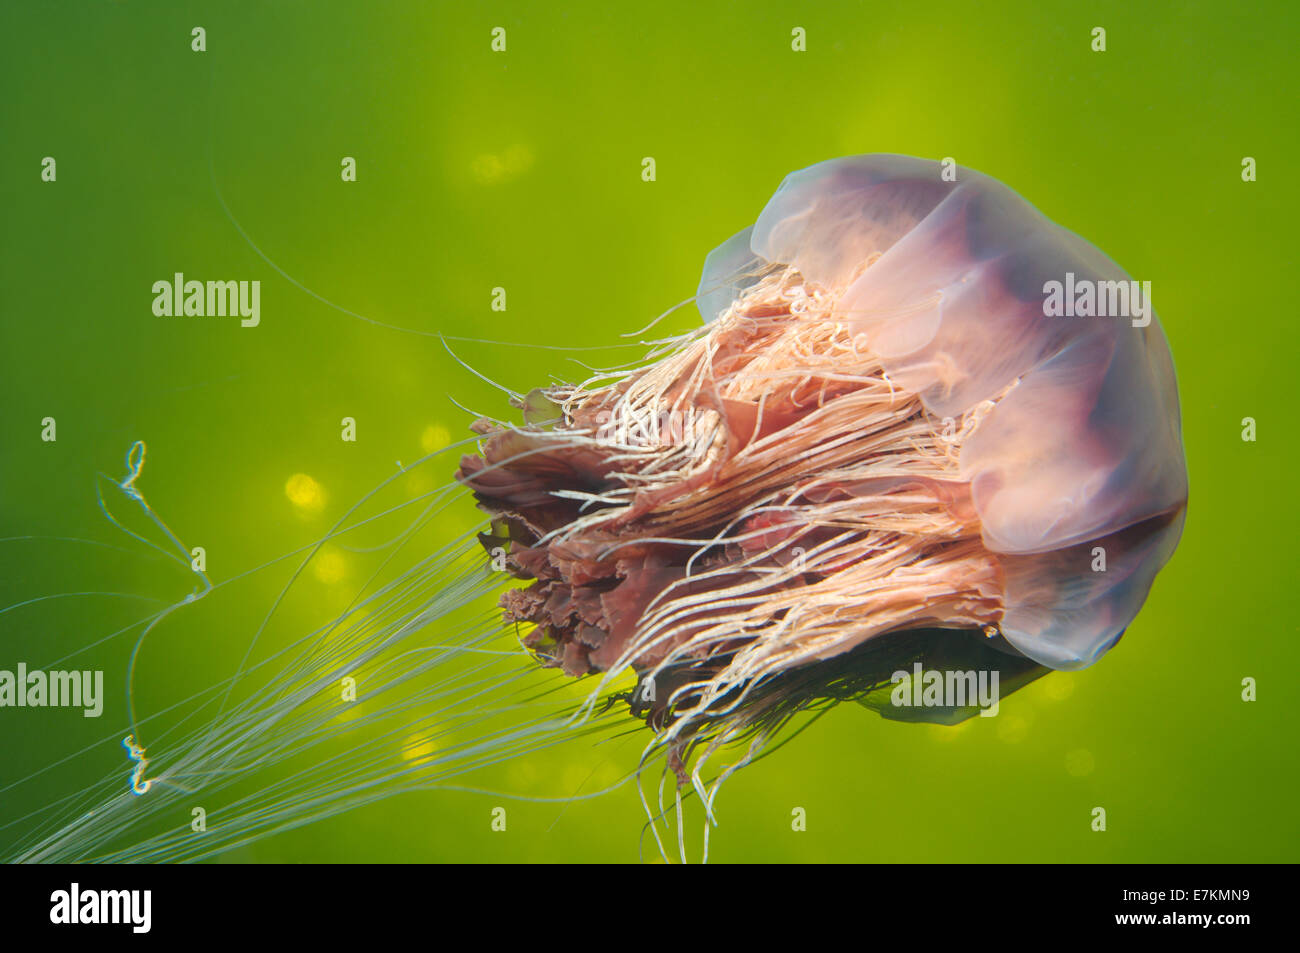 Méduse à crinière de lion (Cyanea capillata) Mer Blanche, la Carélie, de l'Arctique, Fédération de Russie Banque D'Images